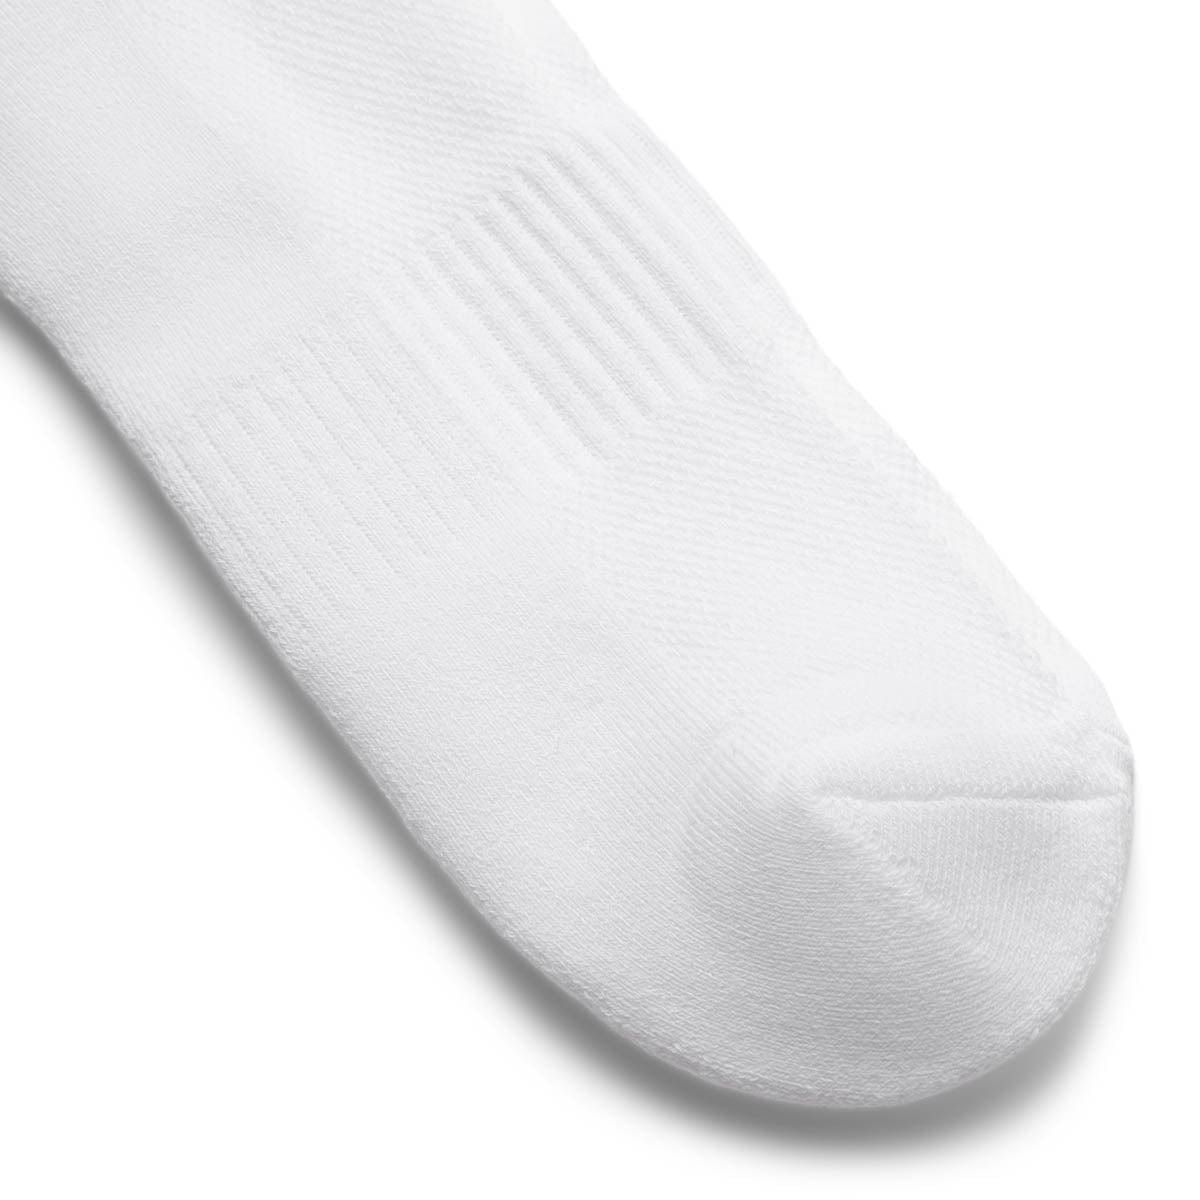 Bodega Socks WHITE / O/S BODEGA ROSE SOCK